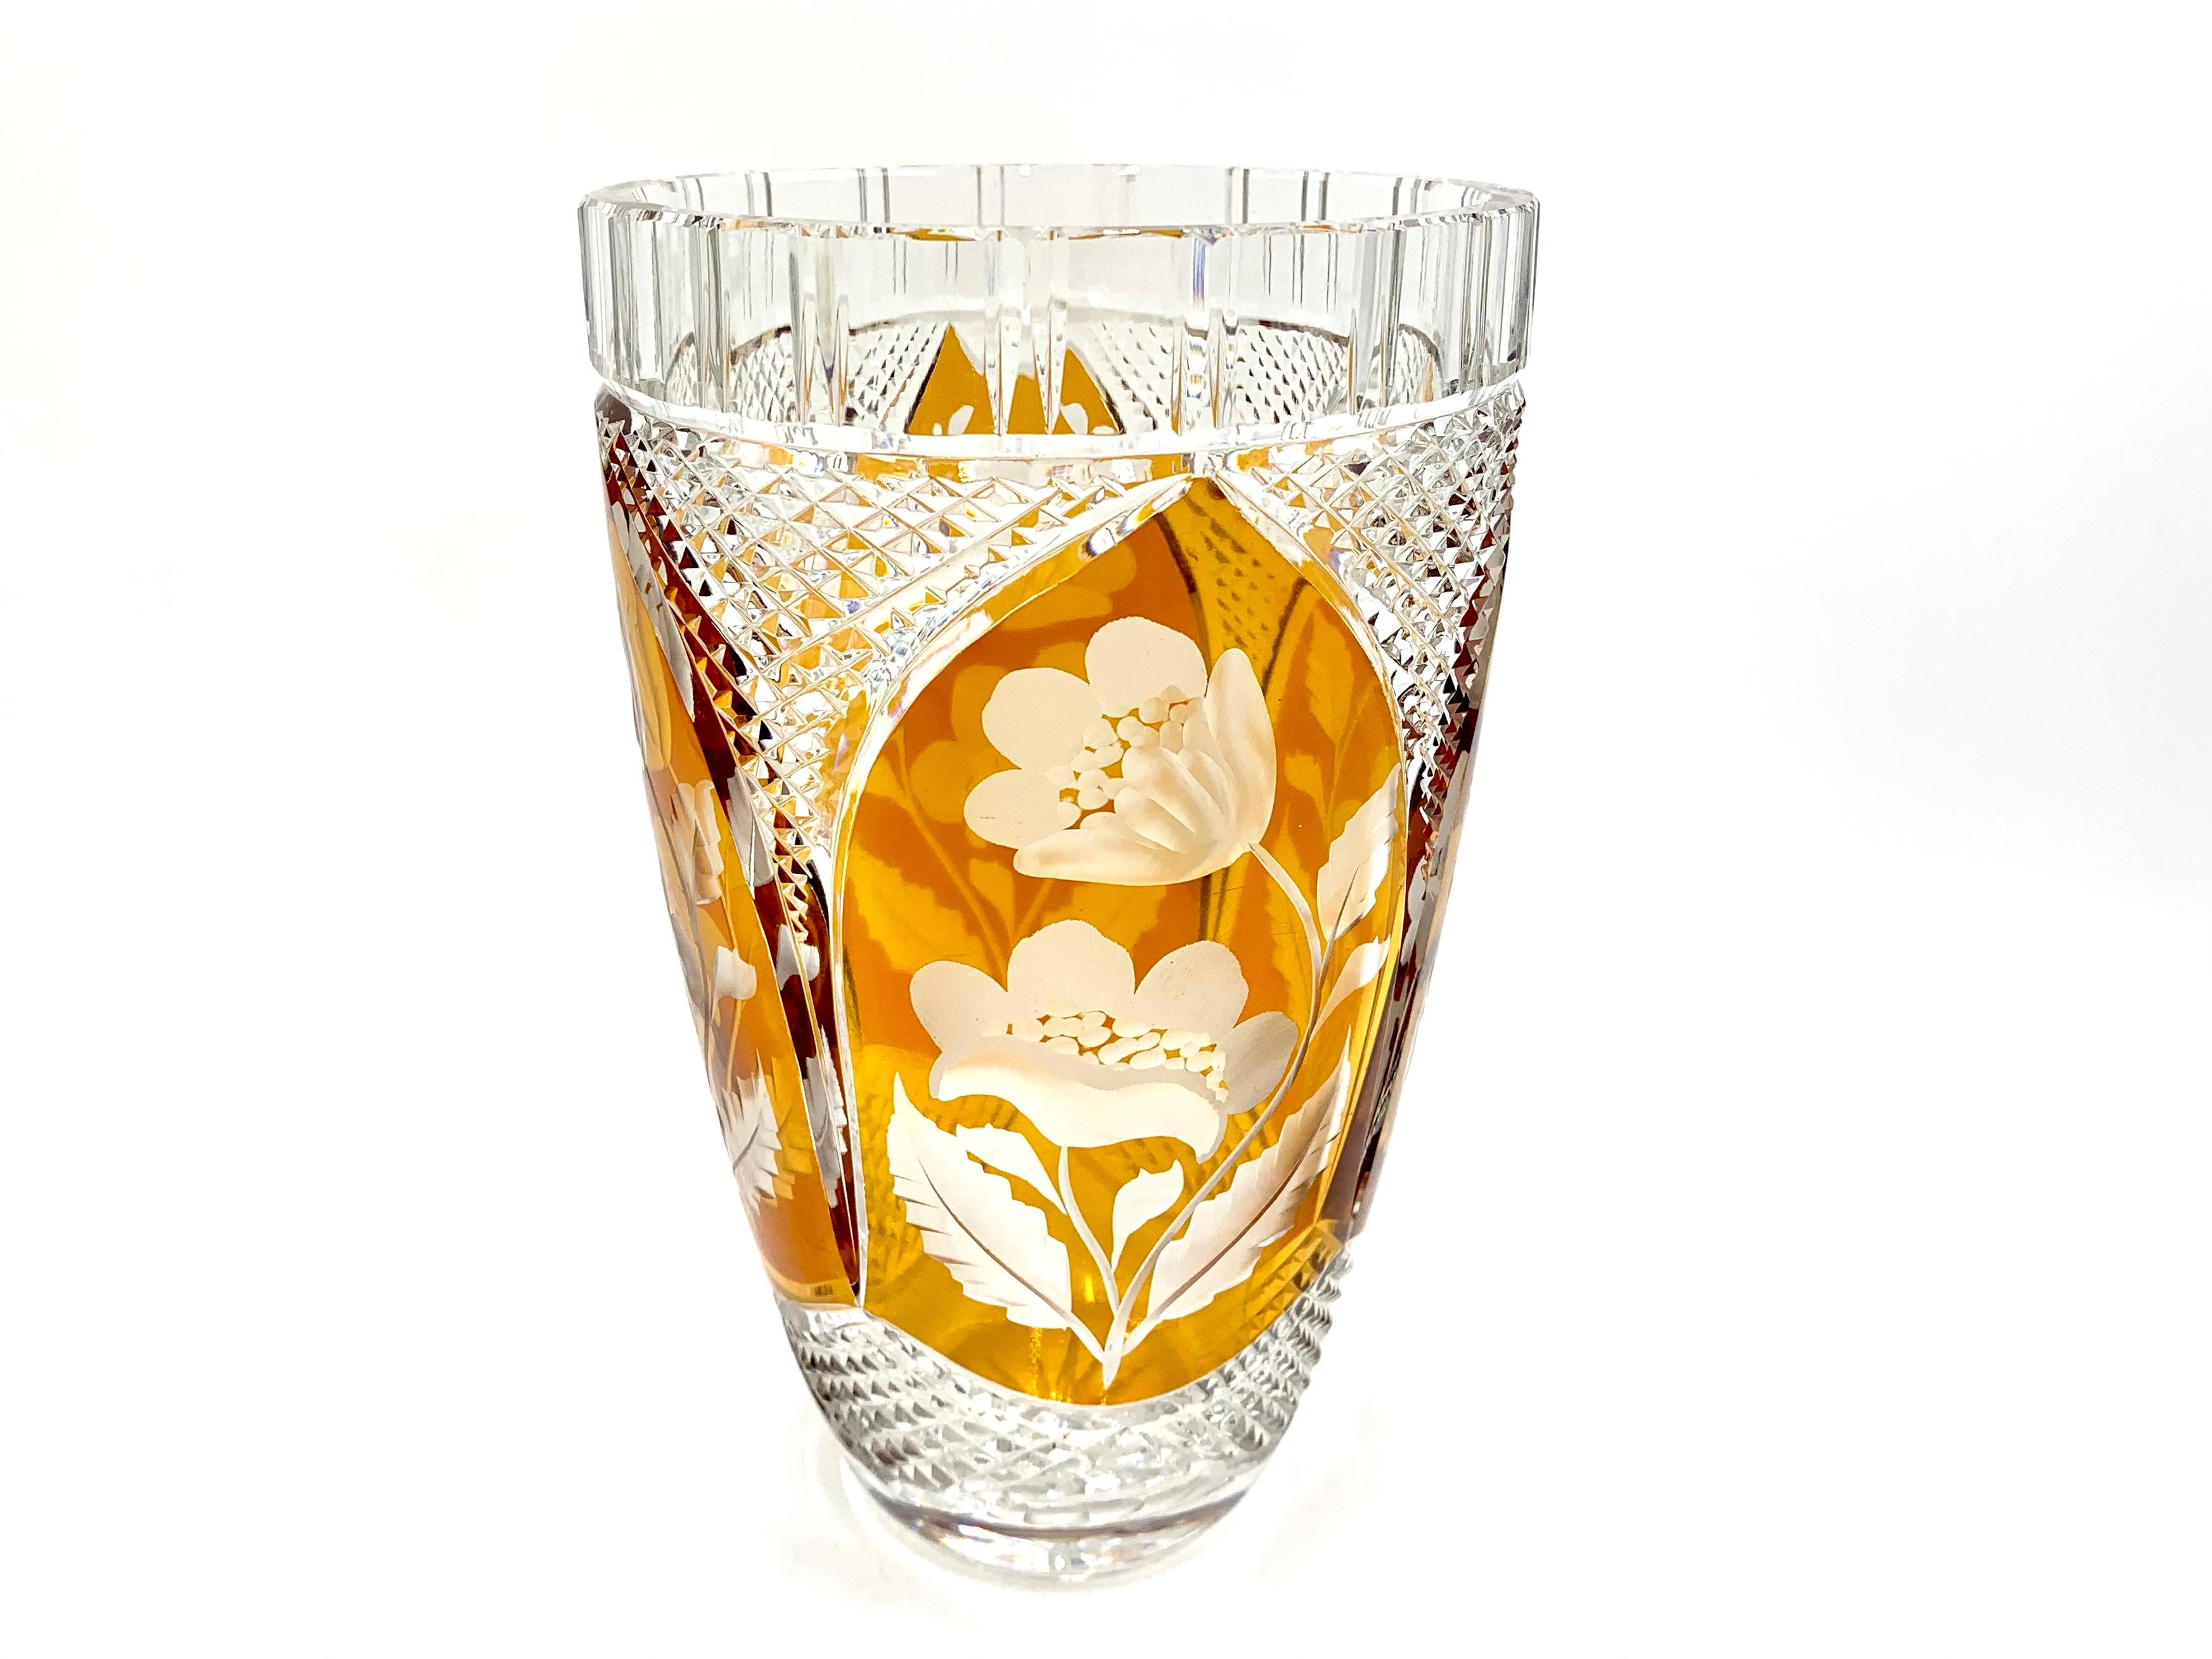 Vase en cristal avec verre et motif de miel. Produit en Pologne par la verrerie Julia dans les années 1960.

Très bon état

hauteur 31cm, diamètre 11cm.